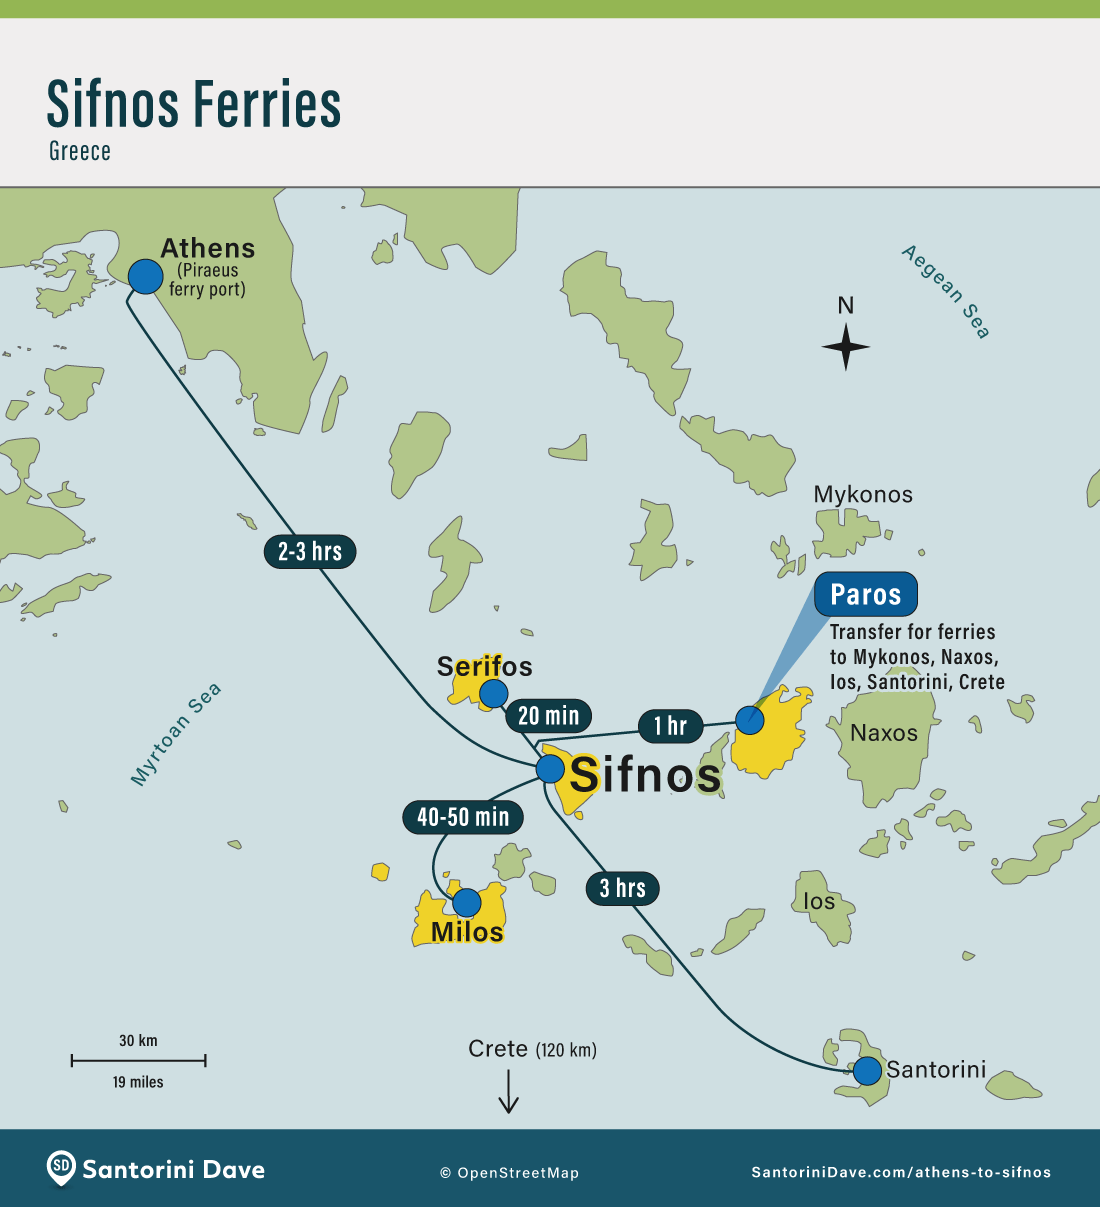 Athens Sifnos Santorini ferry routes.